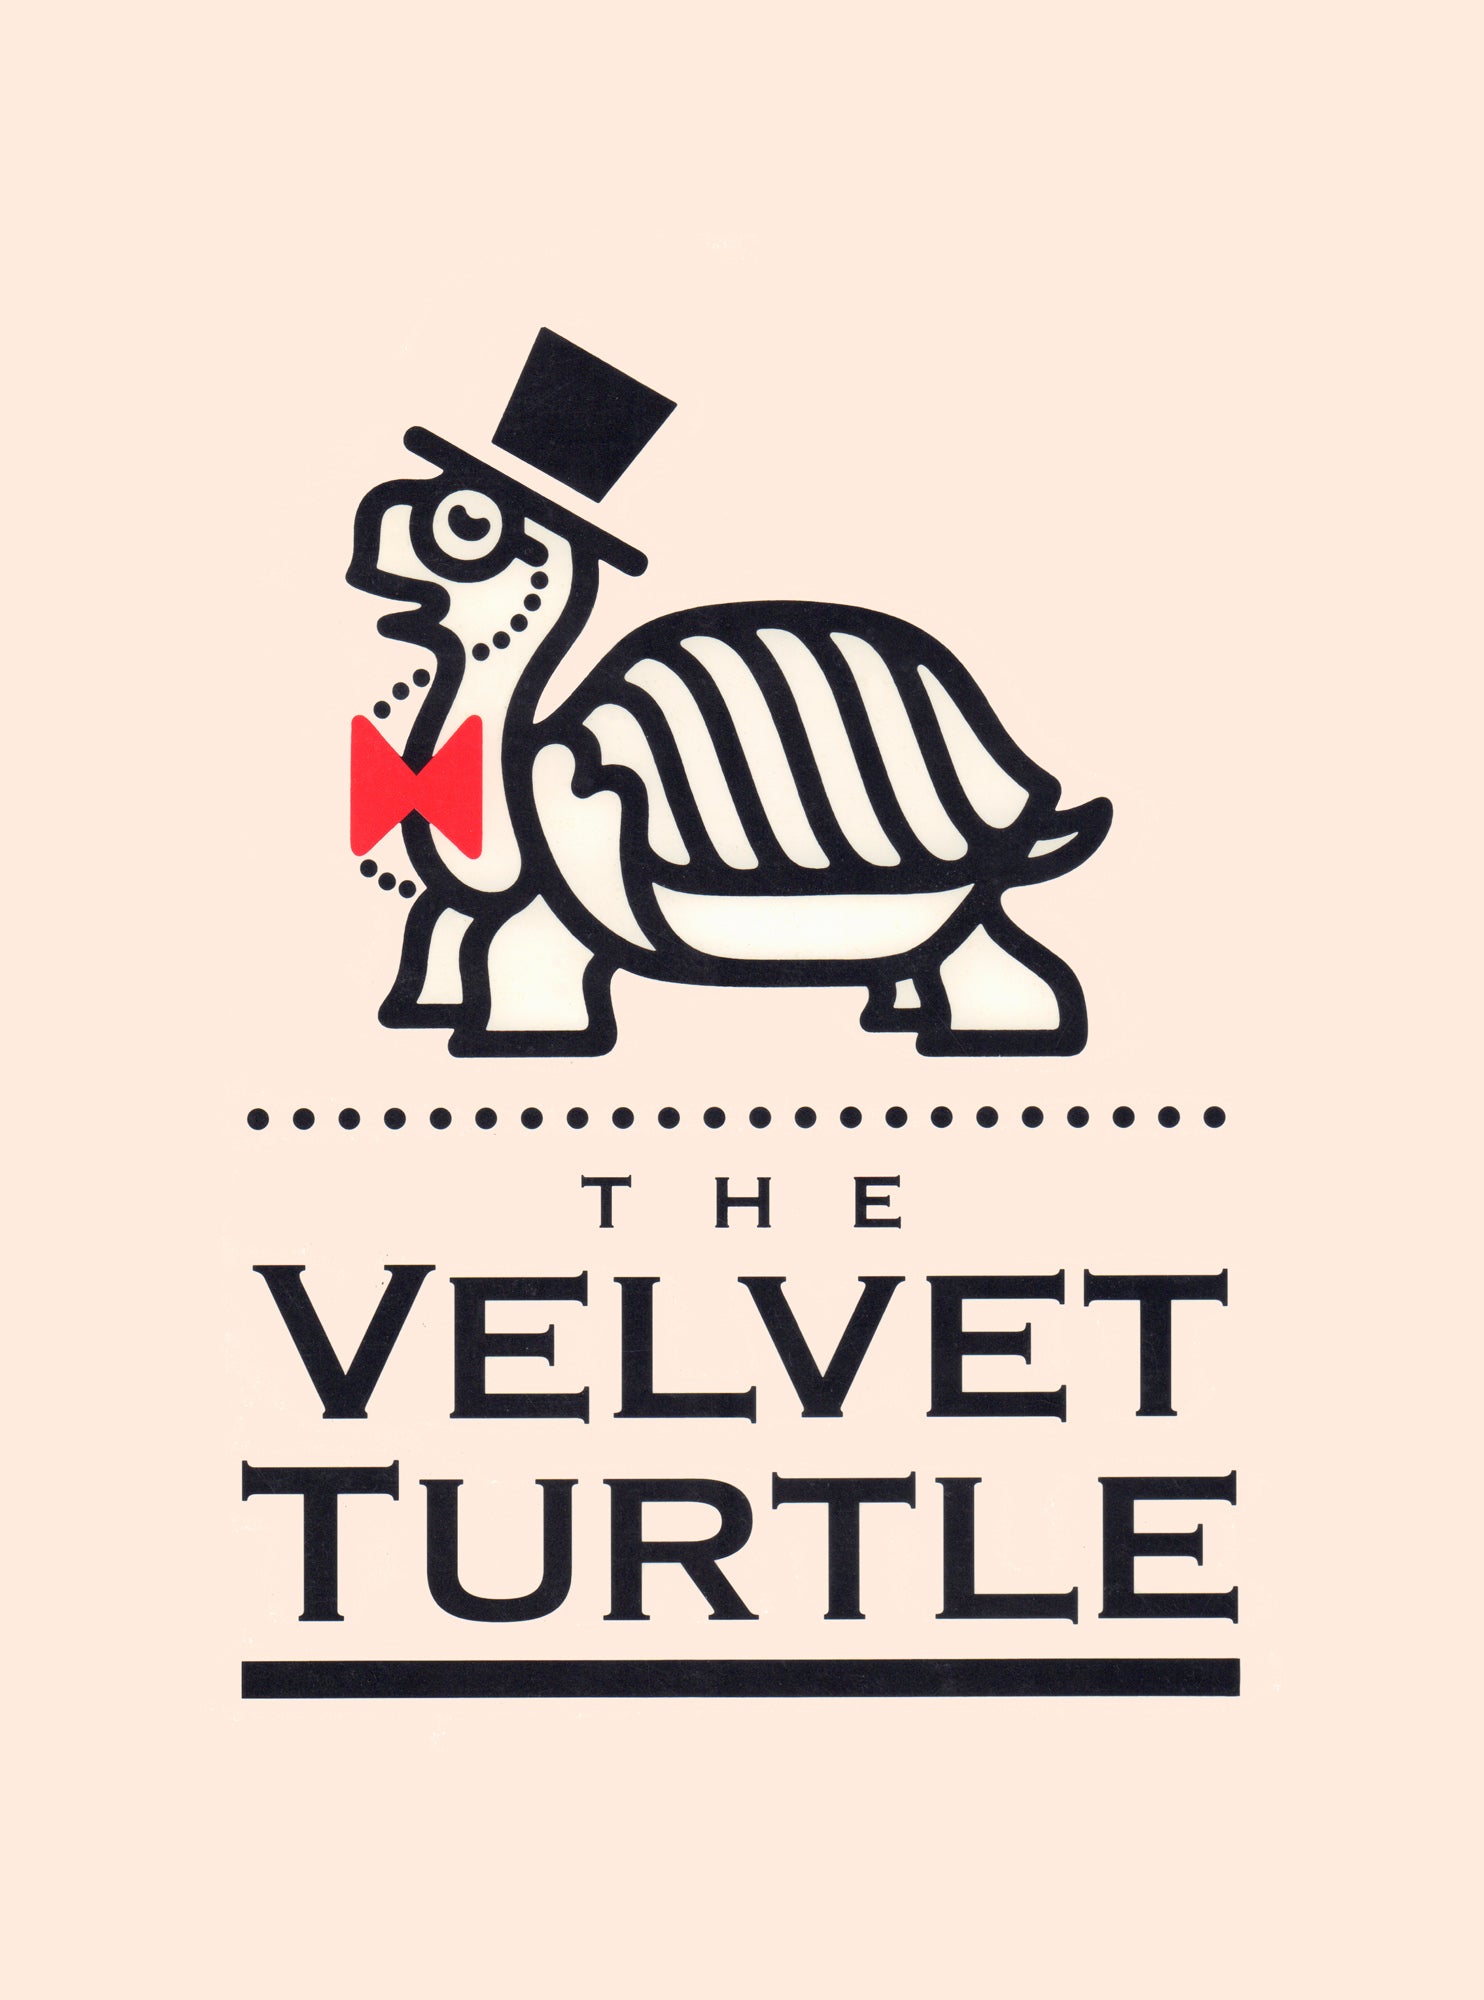 Velvet Turtle, Los Angeles 1980s